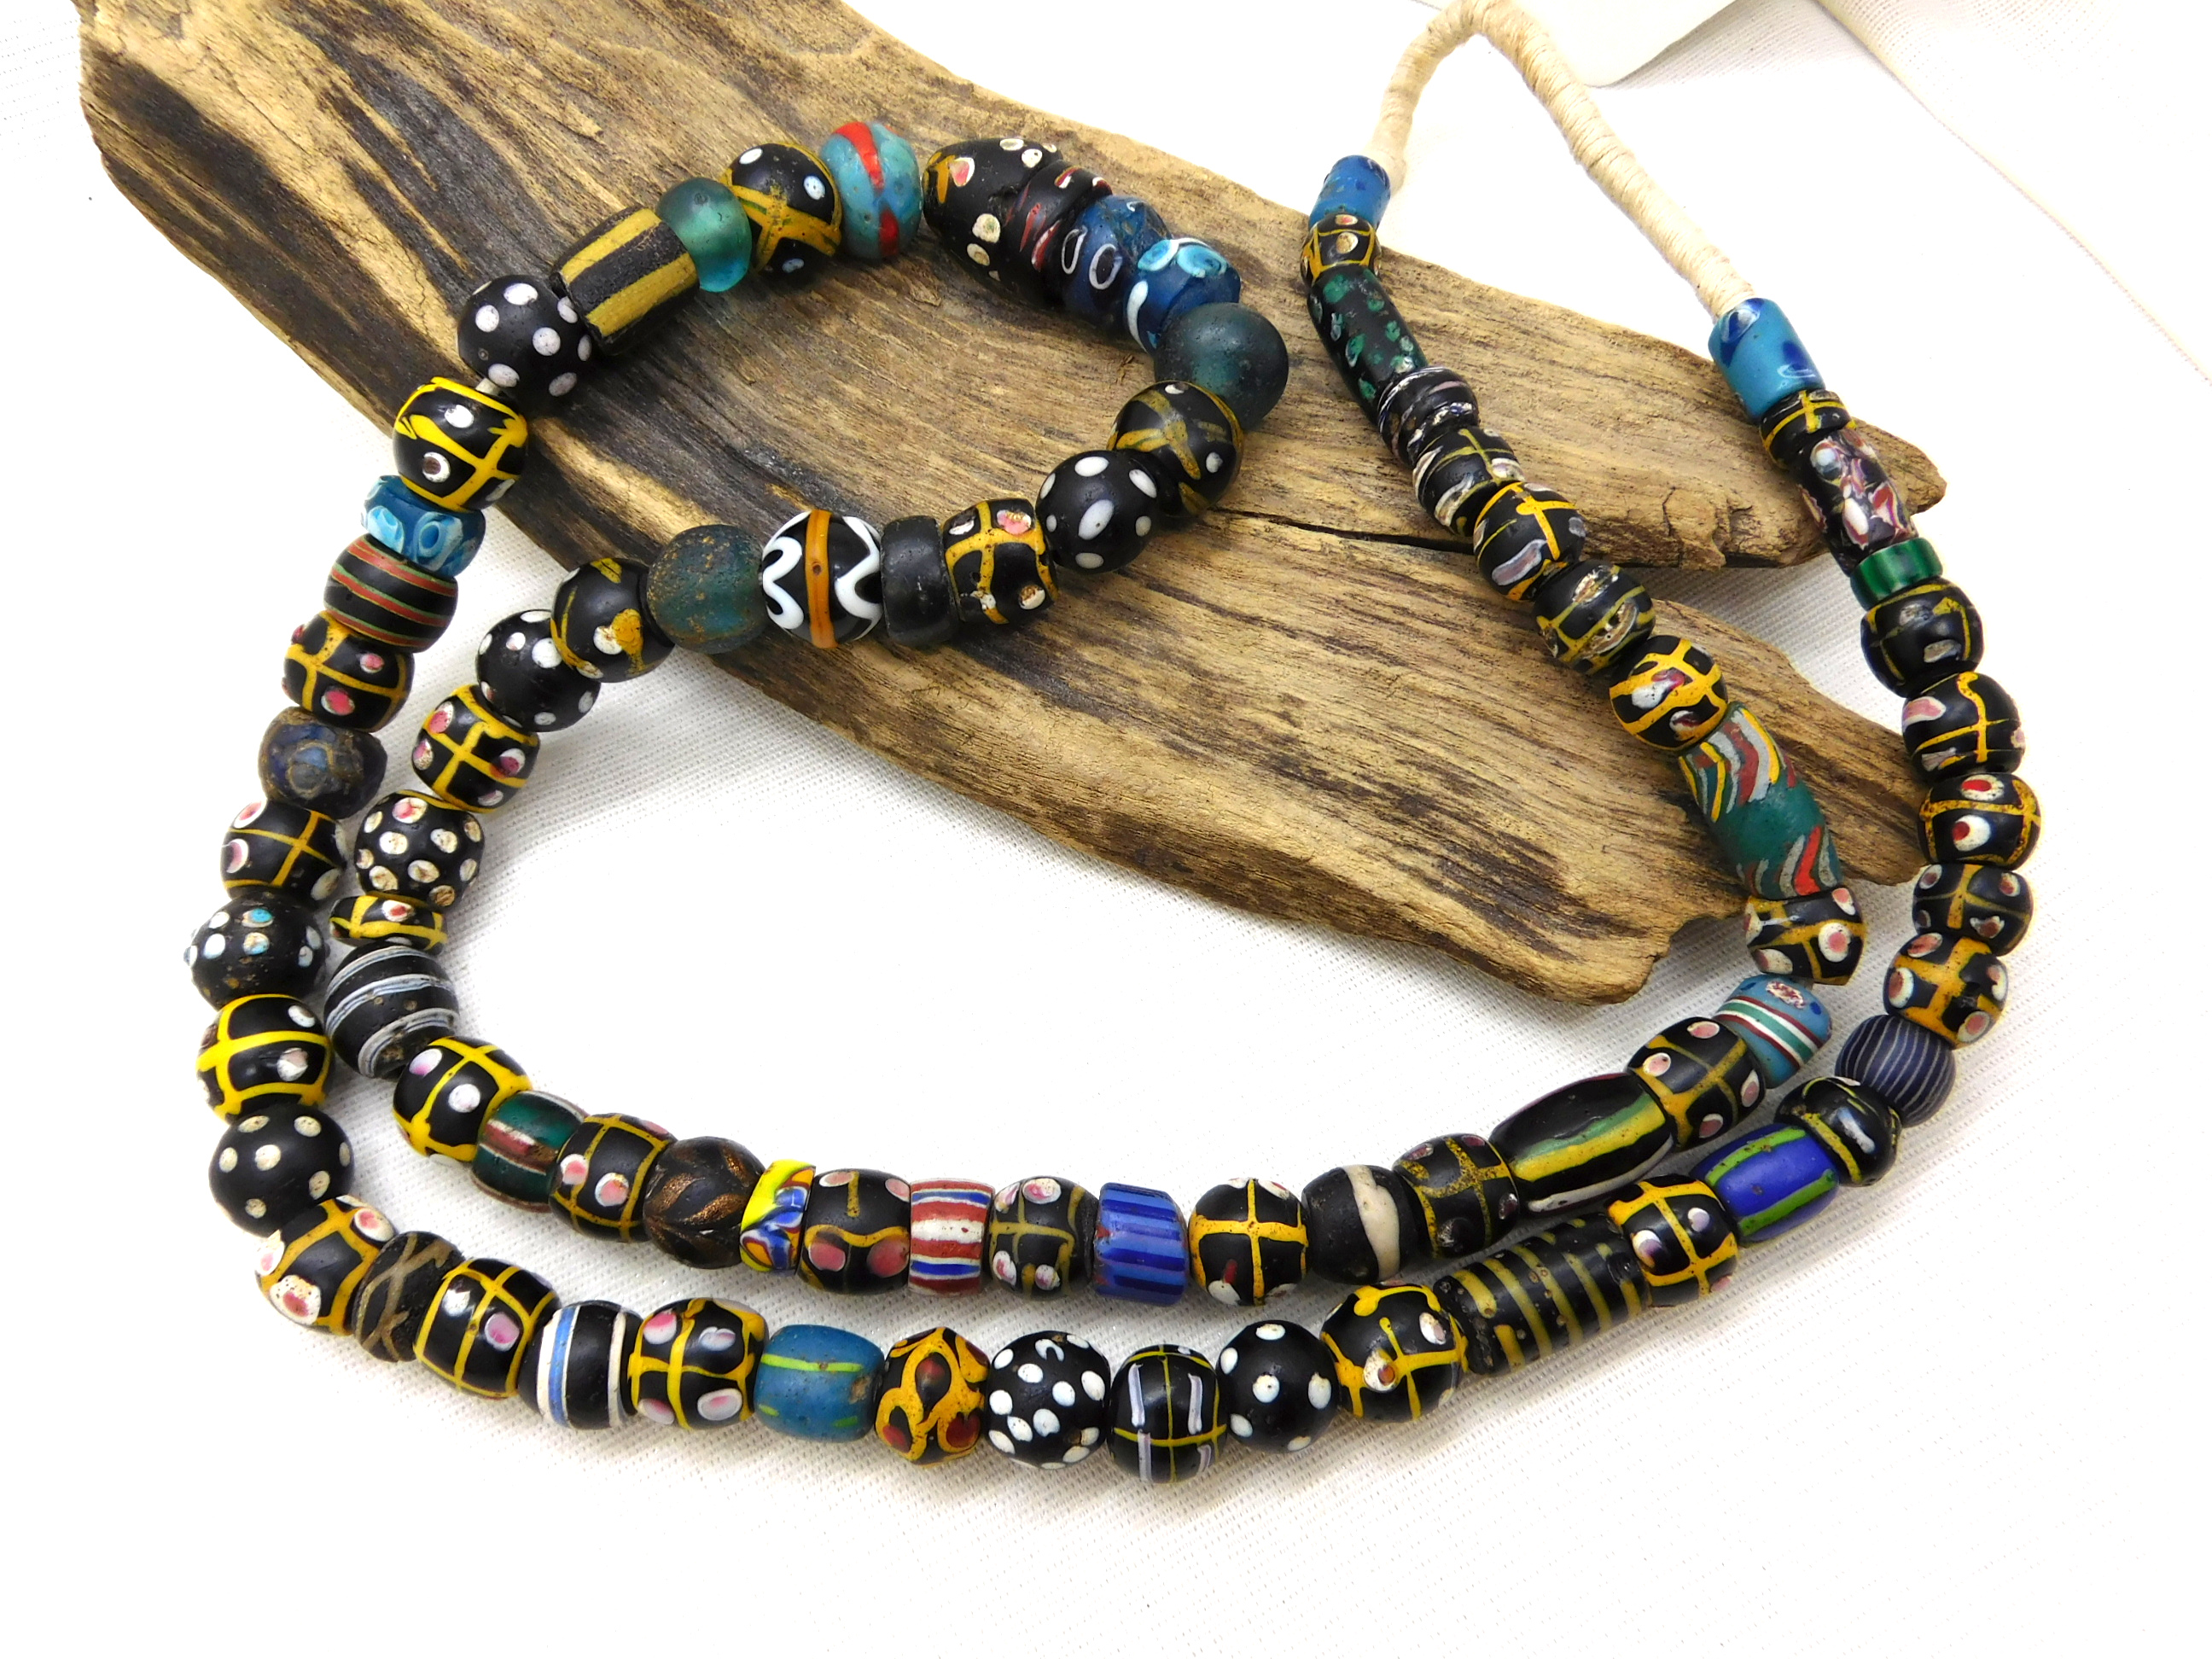 venetian tradebeads from Africa, Skunk beads, eye beads full strand 81 beads